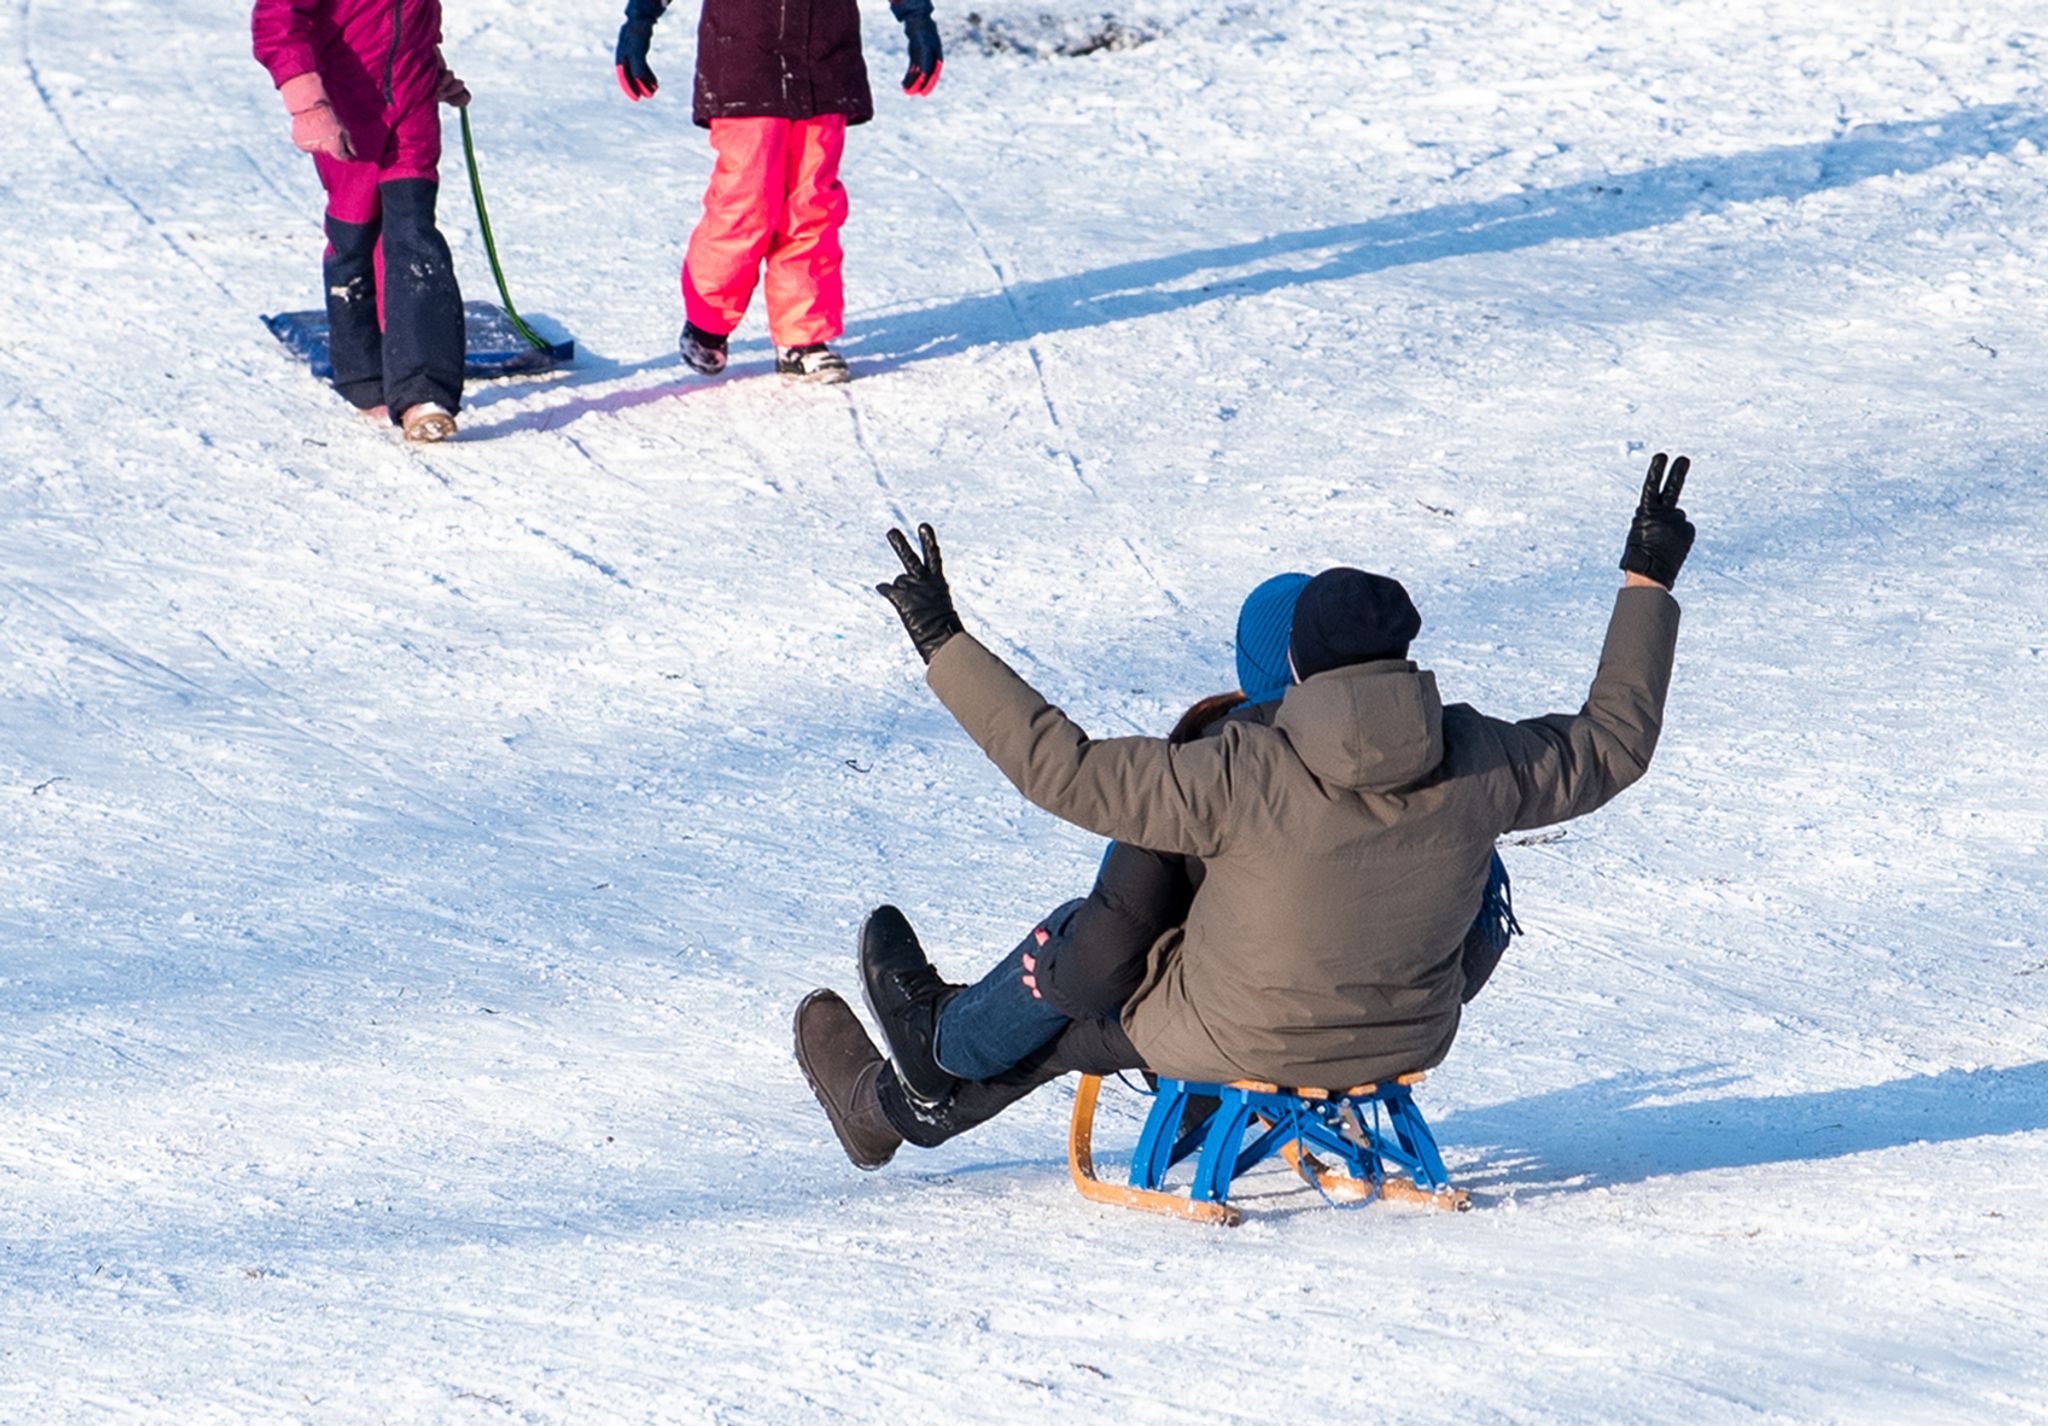 Wintersportler, die auf gemeinsam genutzten Wegen rodeln, müssen auf ihr Tempo achten.